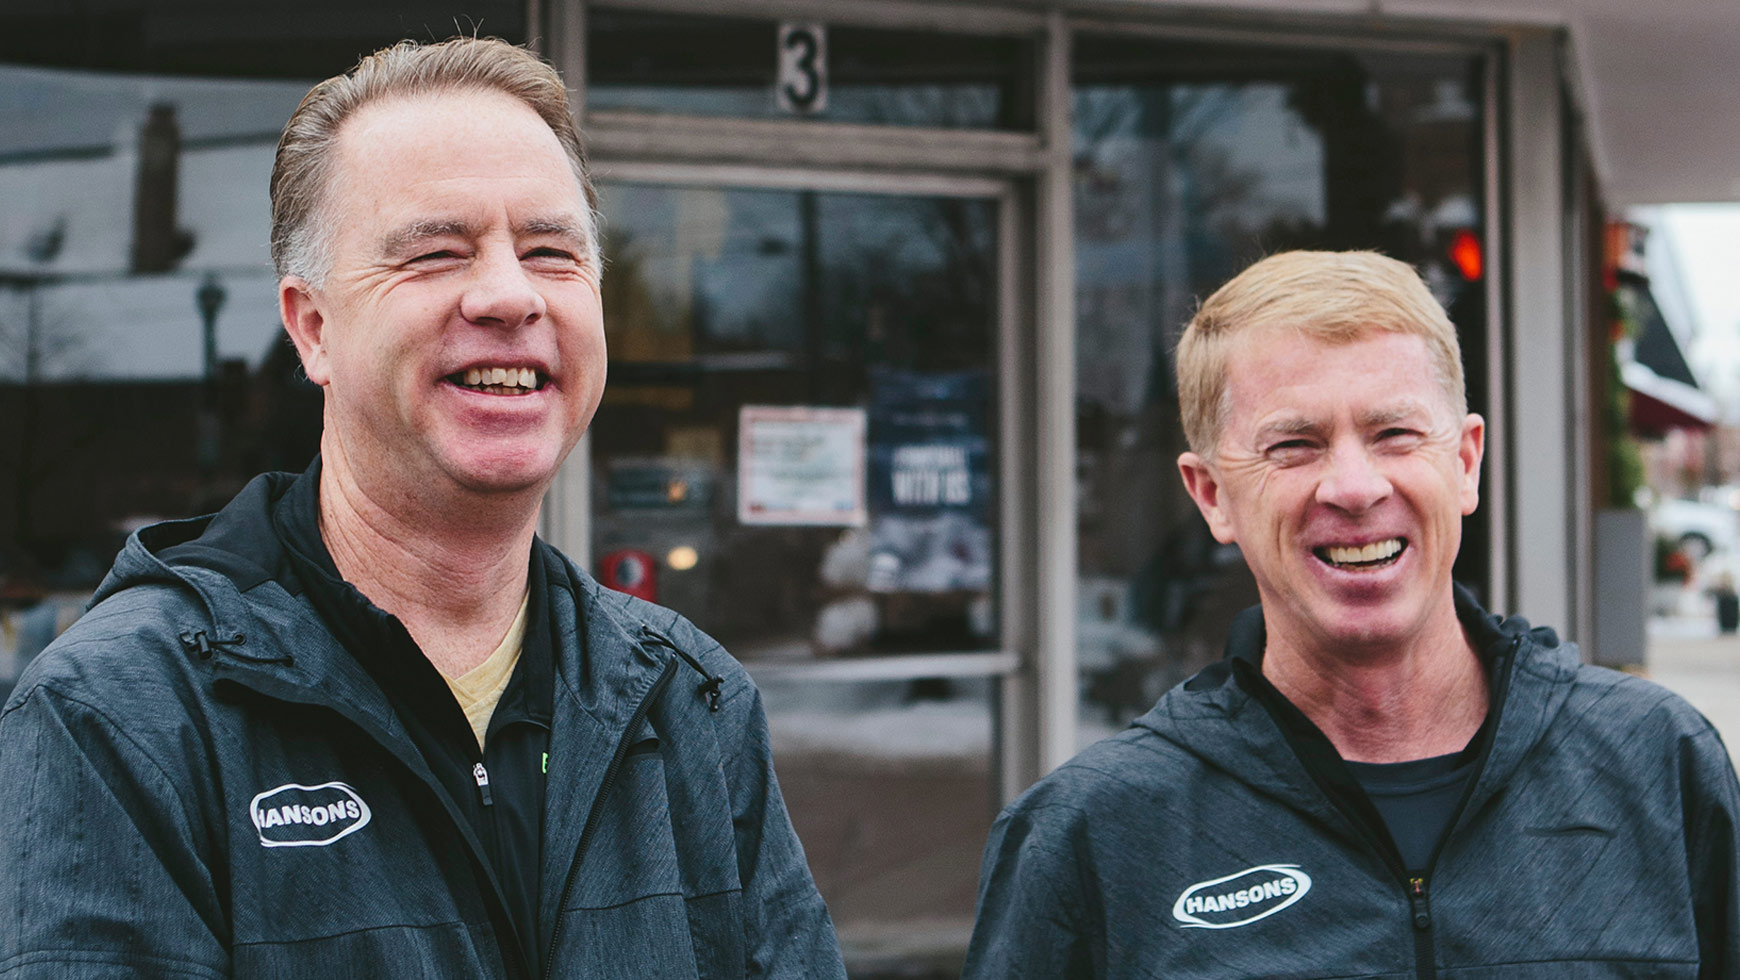 Keith et Kevin Hanson, frères et fondateurs de l’ODP Hansons, posent devant leur magasin de course.